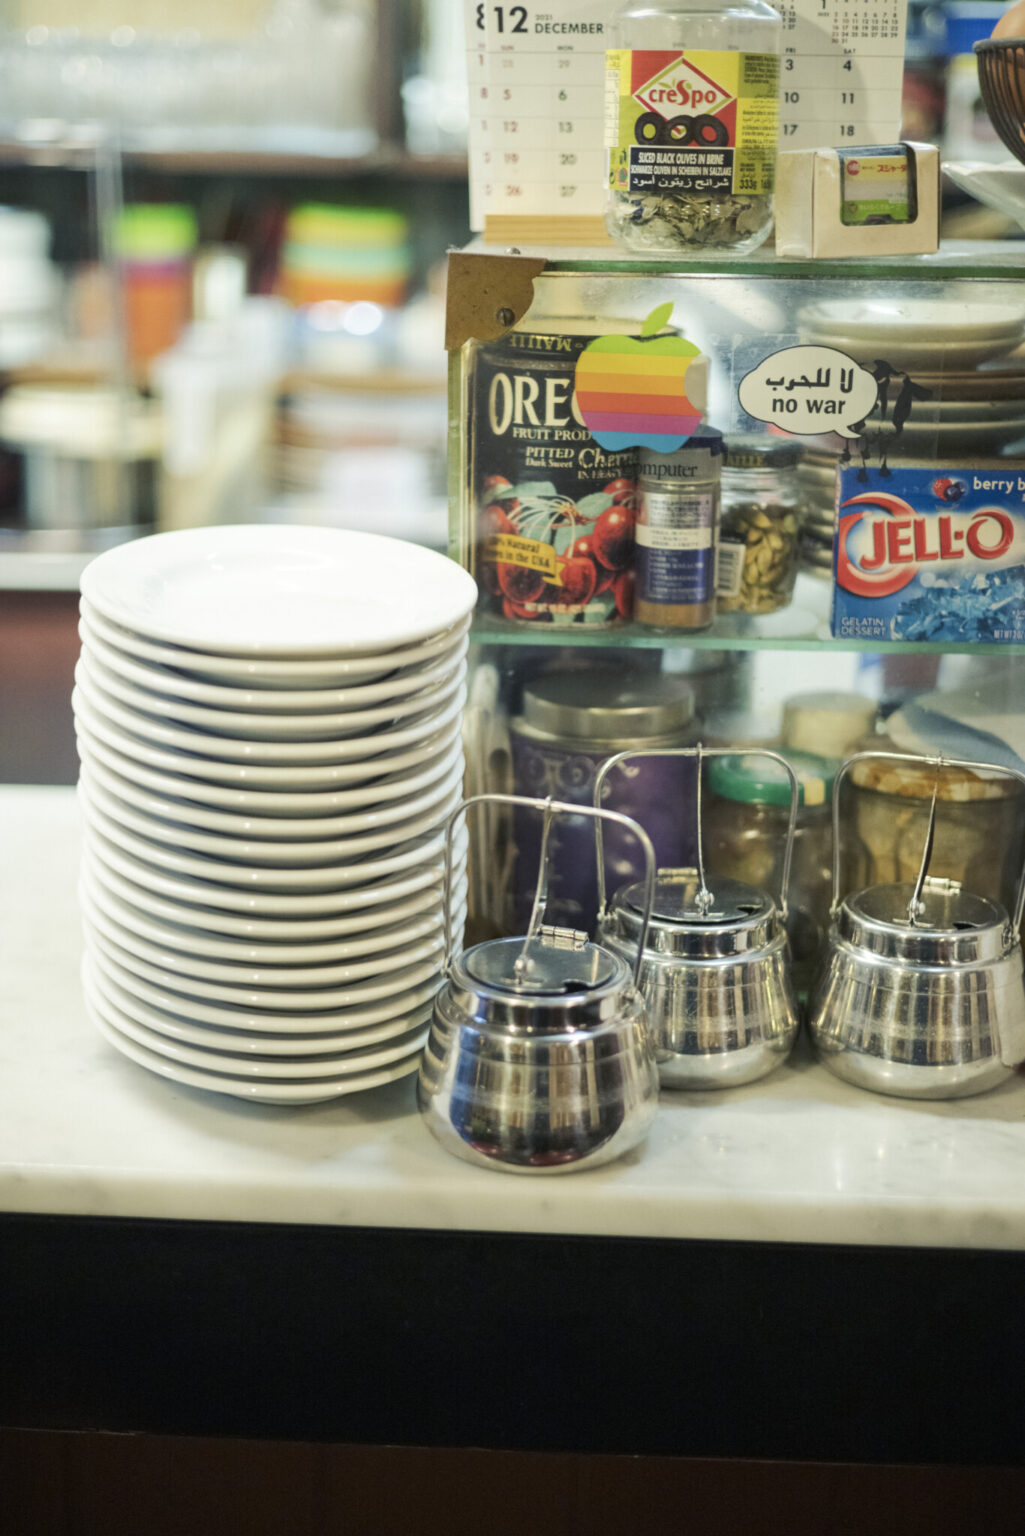 シュガーポットやミルクピッチャー、トレーなど、ステンレス製品の多くは廃業した純喫茶のお下がり。2006年閉店の名曲喫茶〈みゅーず〉から譲り受けたカトラリーやグラス、〈セブン〉の什器も現役だ。